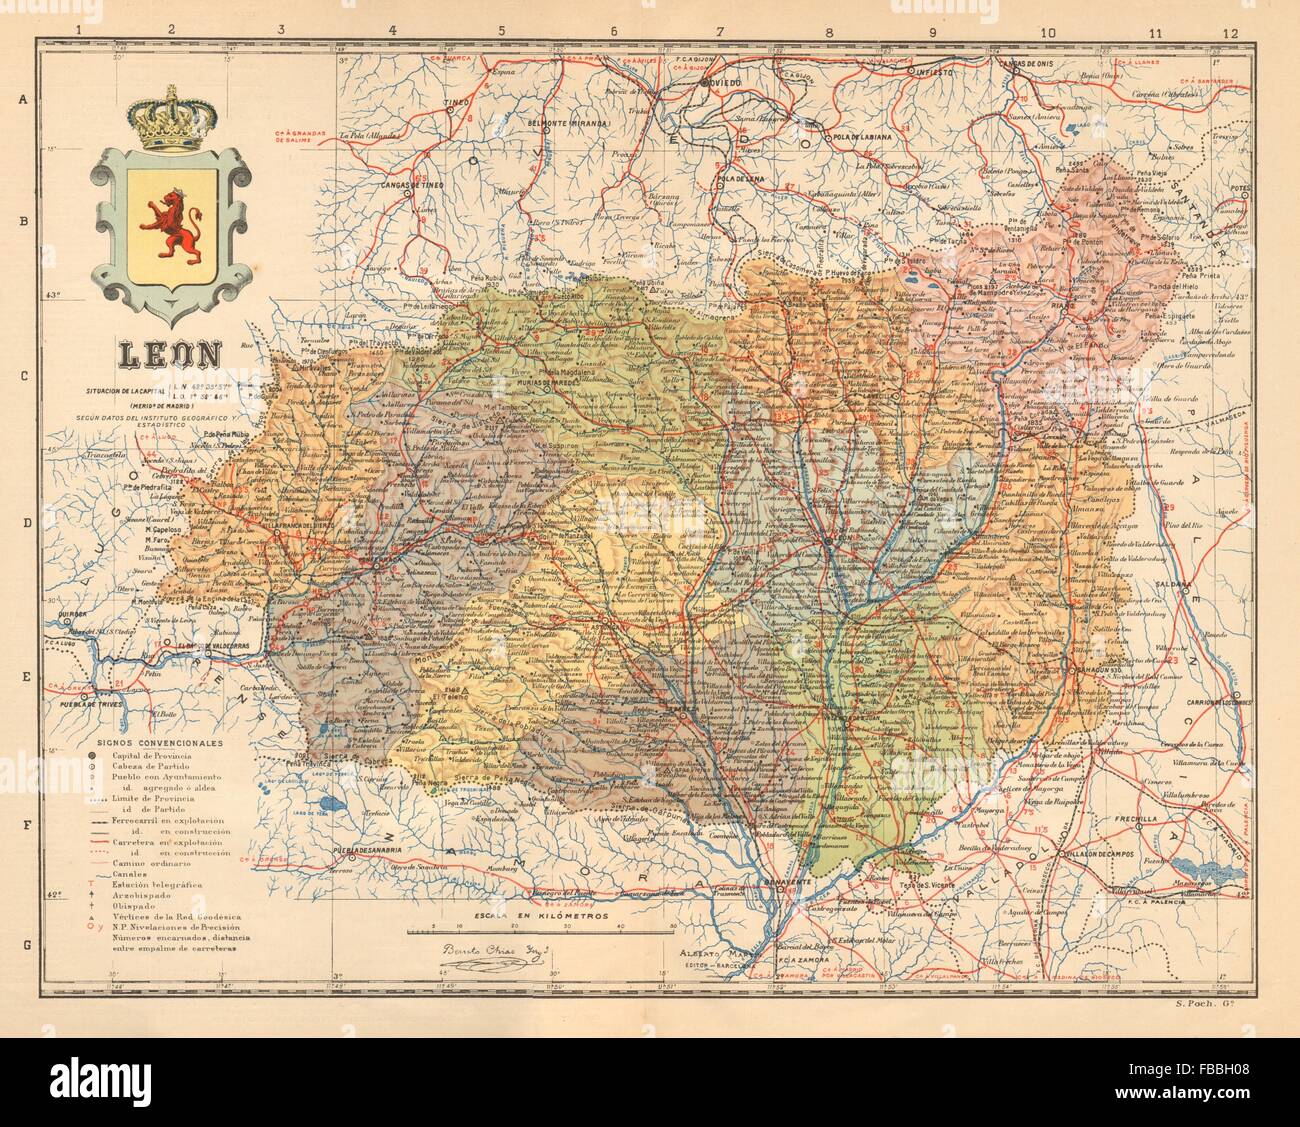 LEÓN. Leon. Castilla y León. Mapa antiguo de la provincia. ALBERTO MARTIN c1911 Stock Photo